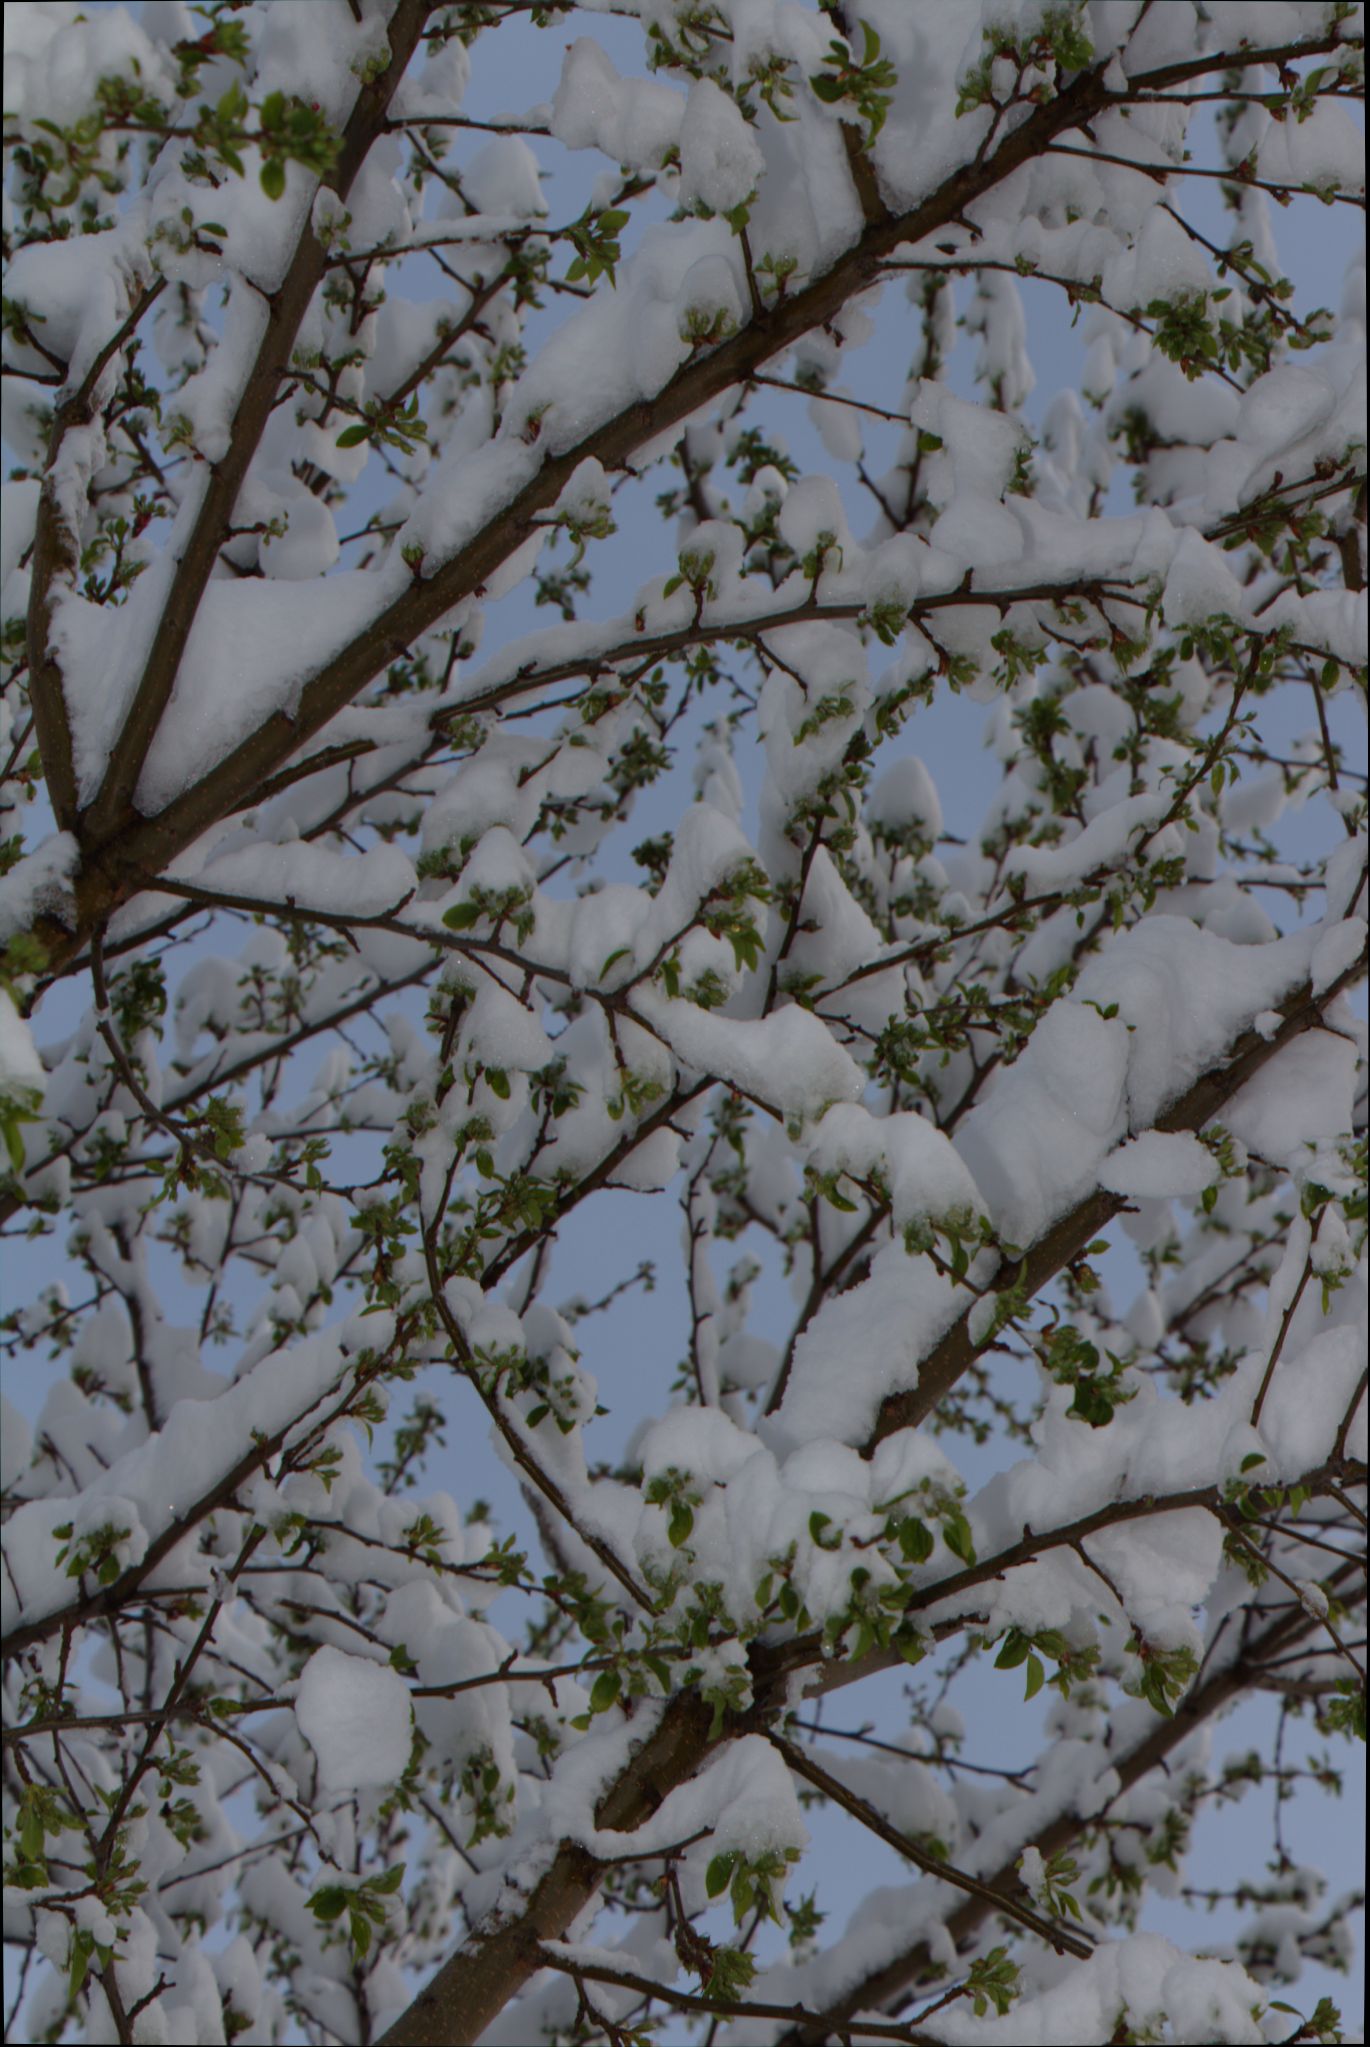 Springtime Blizzard in Denver